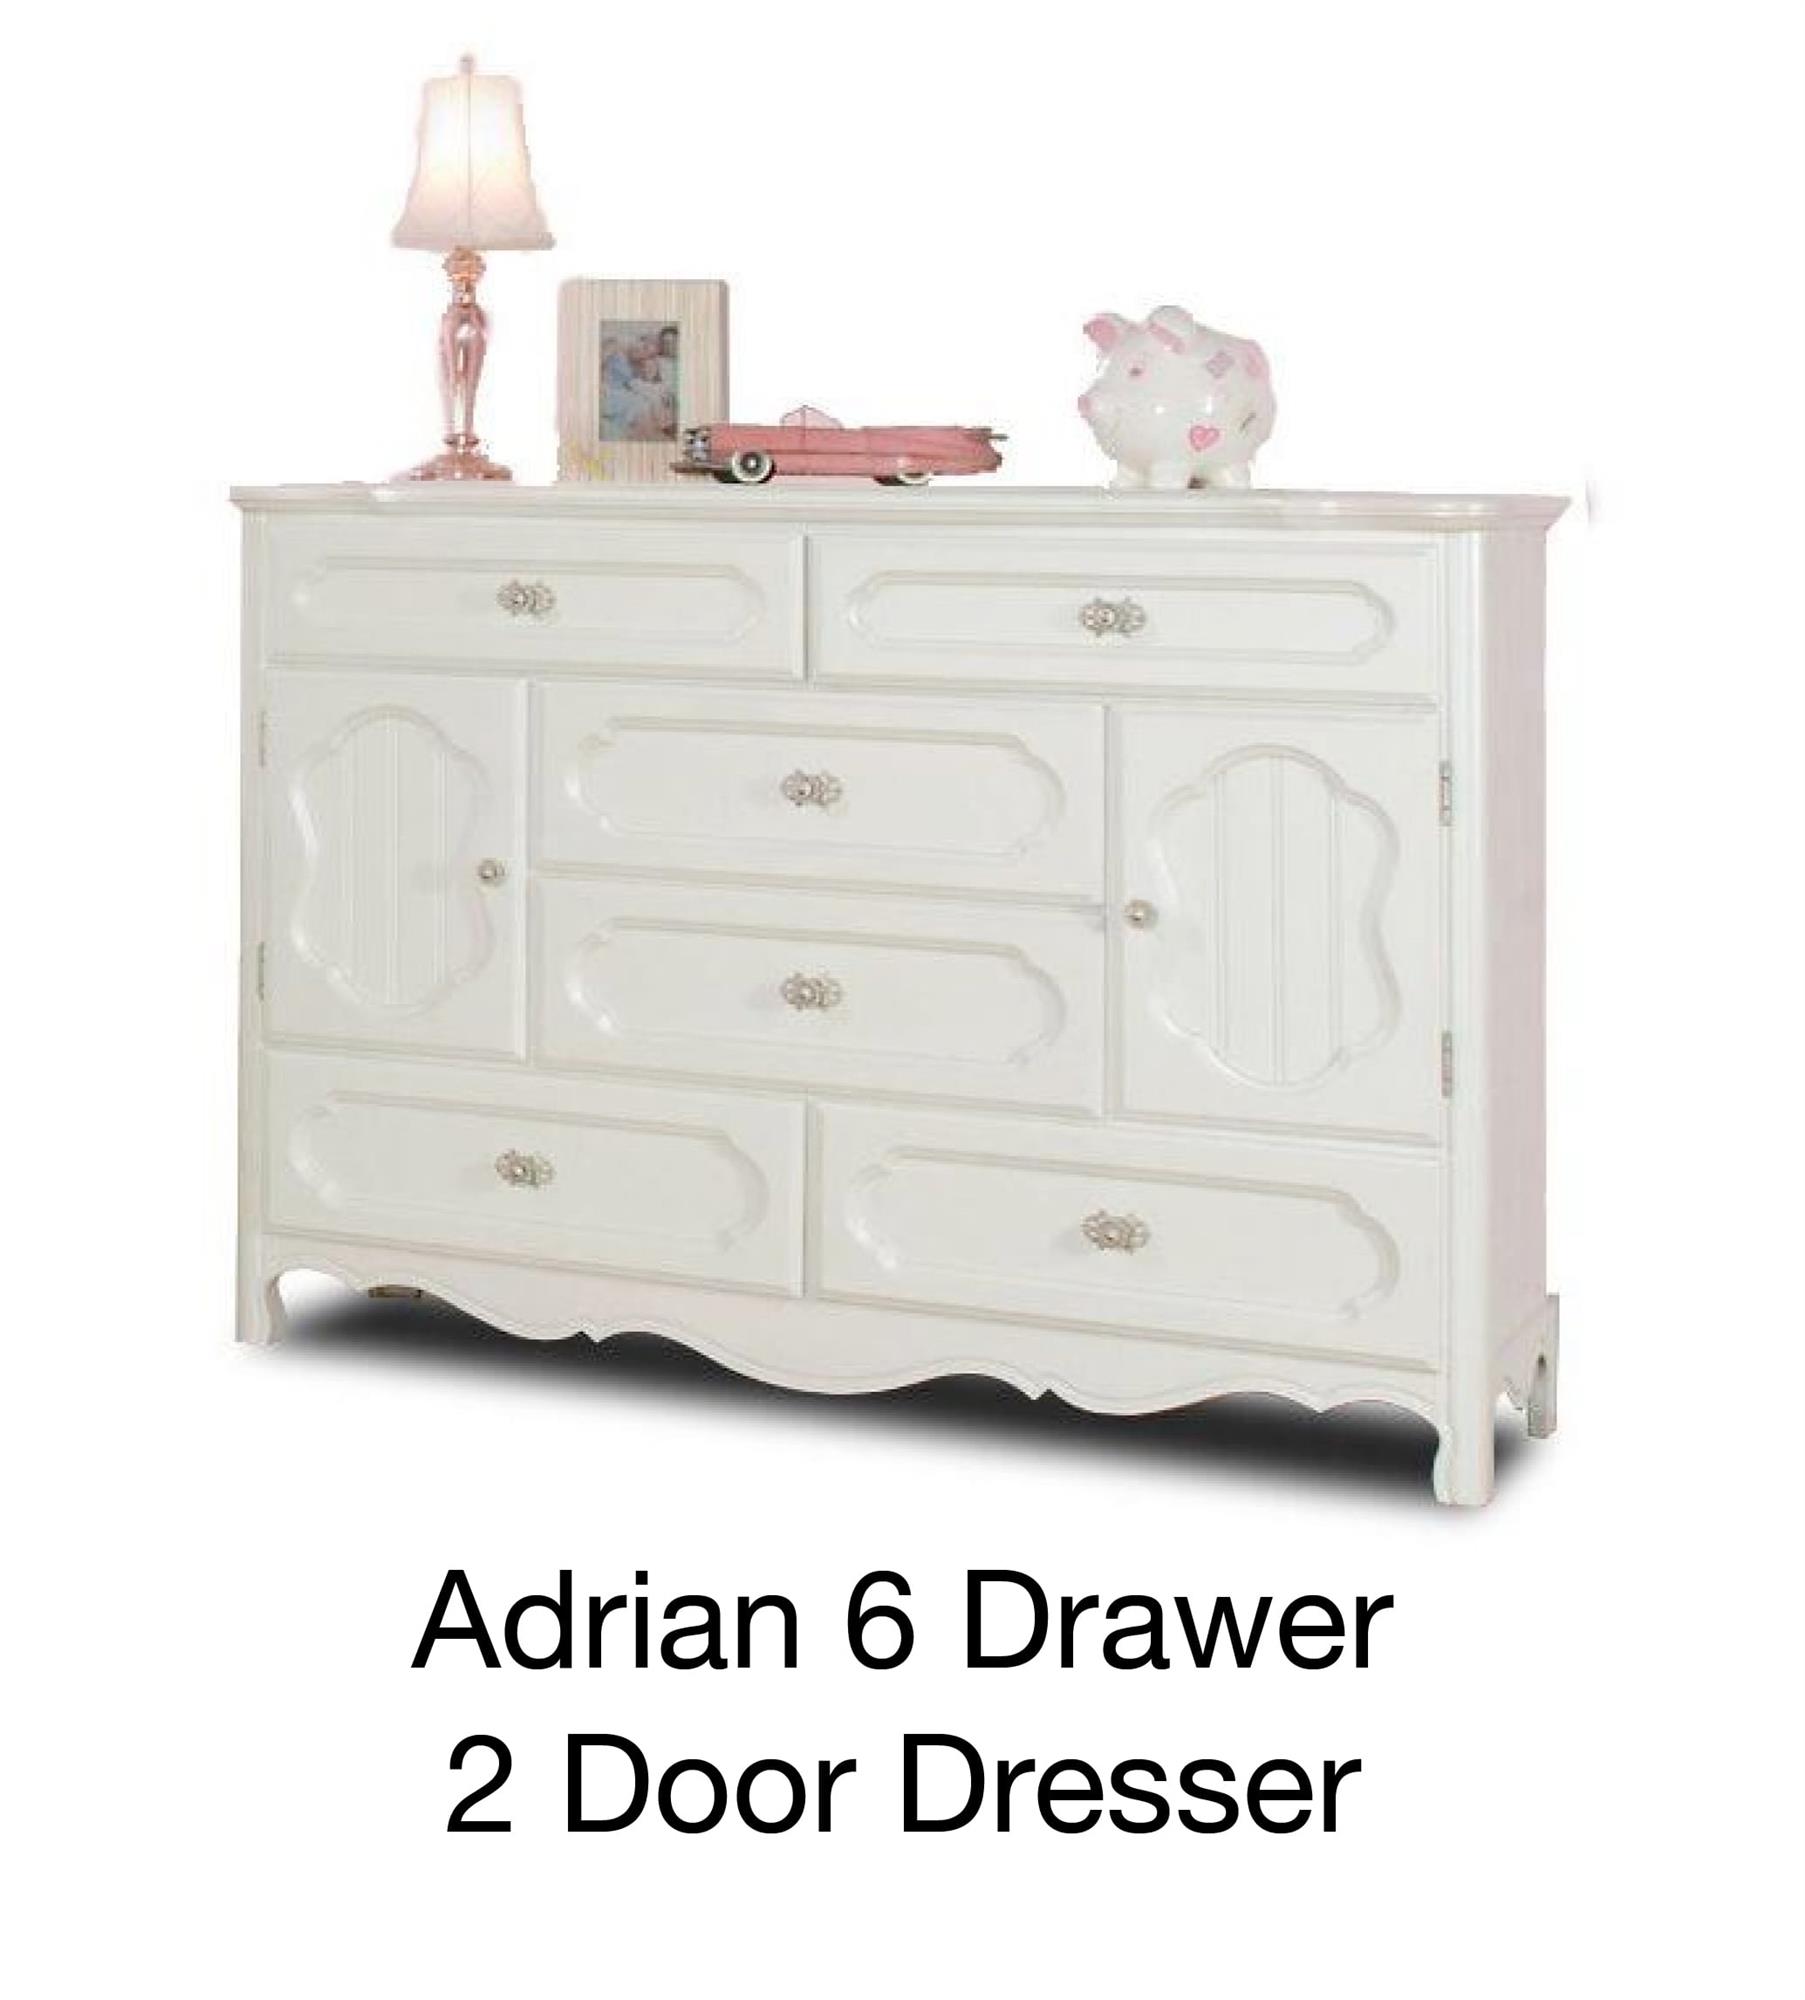 Adrian 6 Drawer 2 Door Dresser